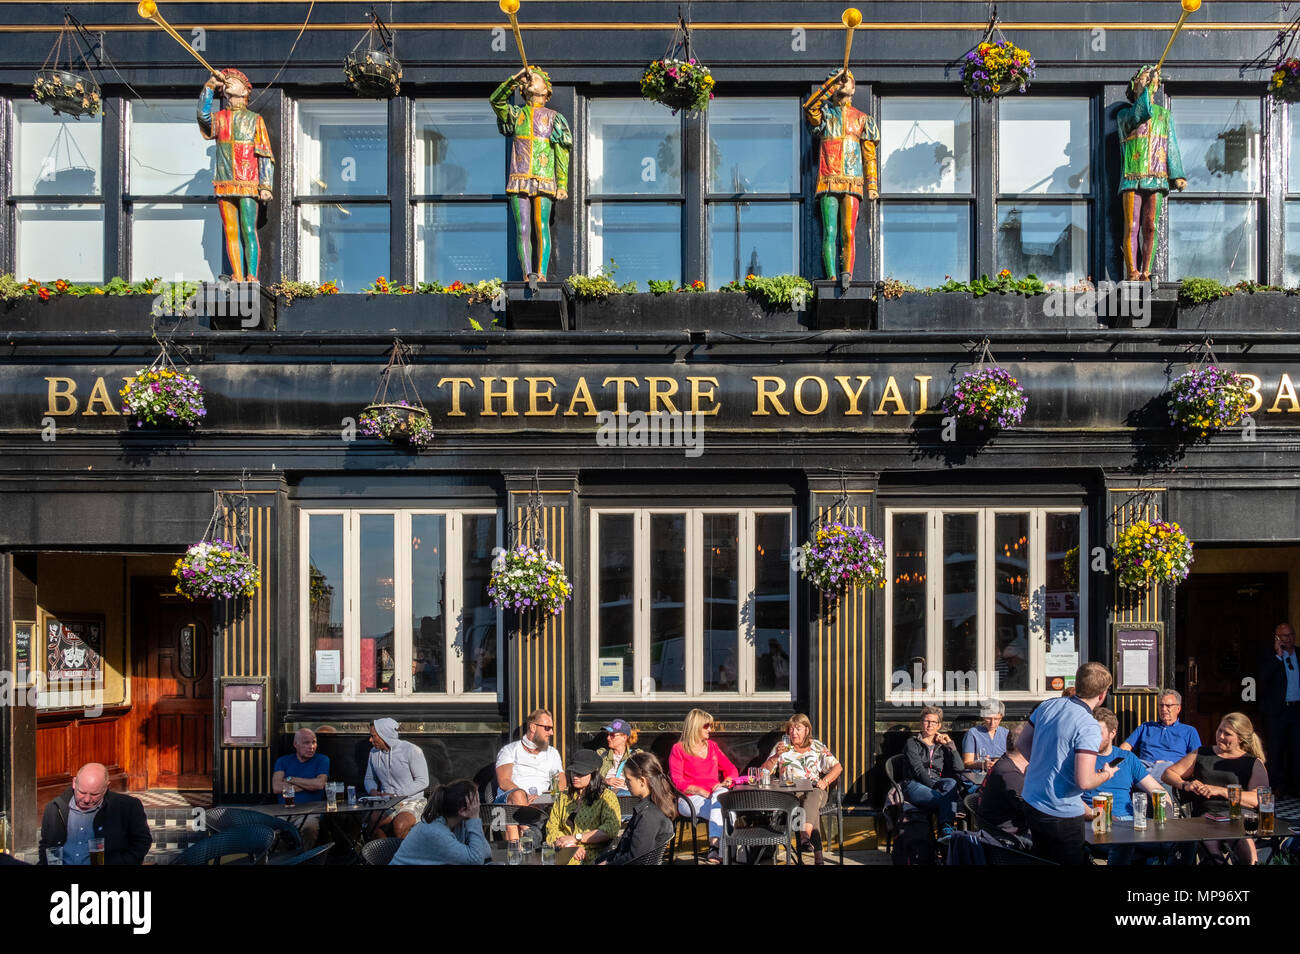 L'extérieur du théâtre Royal pub avec les personnes qui boivent à l'extérieur sur chaude soirée à Édimbourg, Écosse, Royaume-Uni, Royaume-Uni Banque D'Images